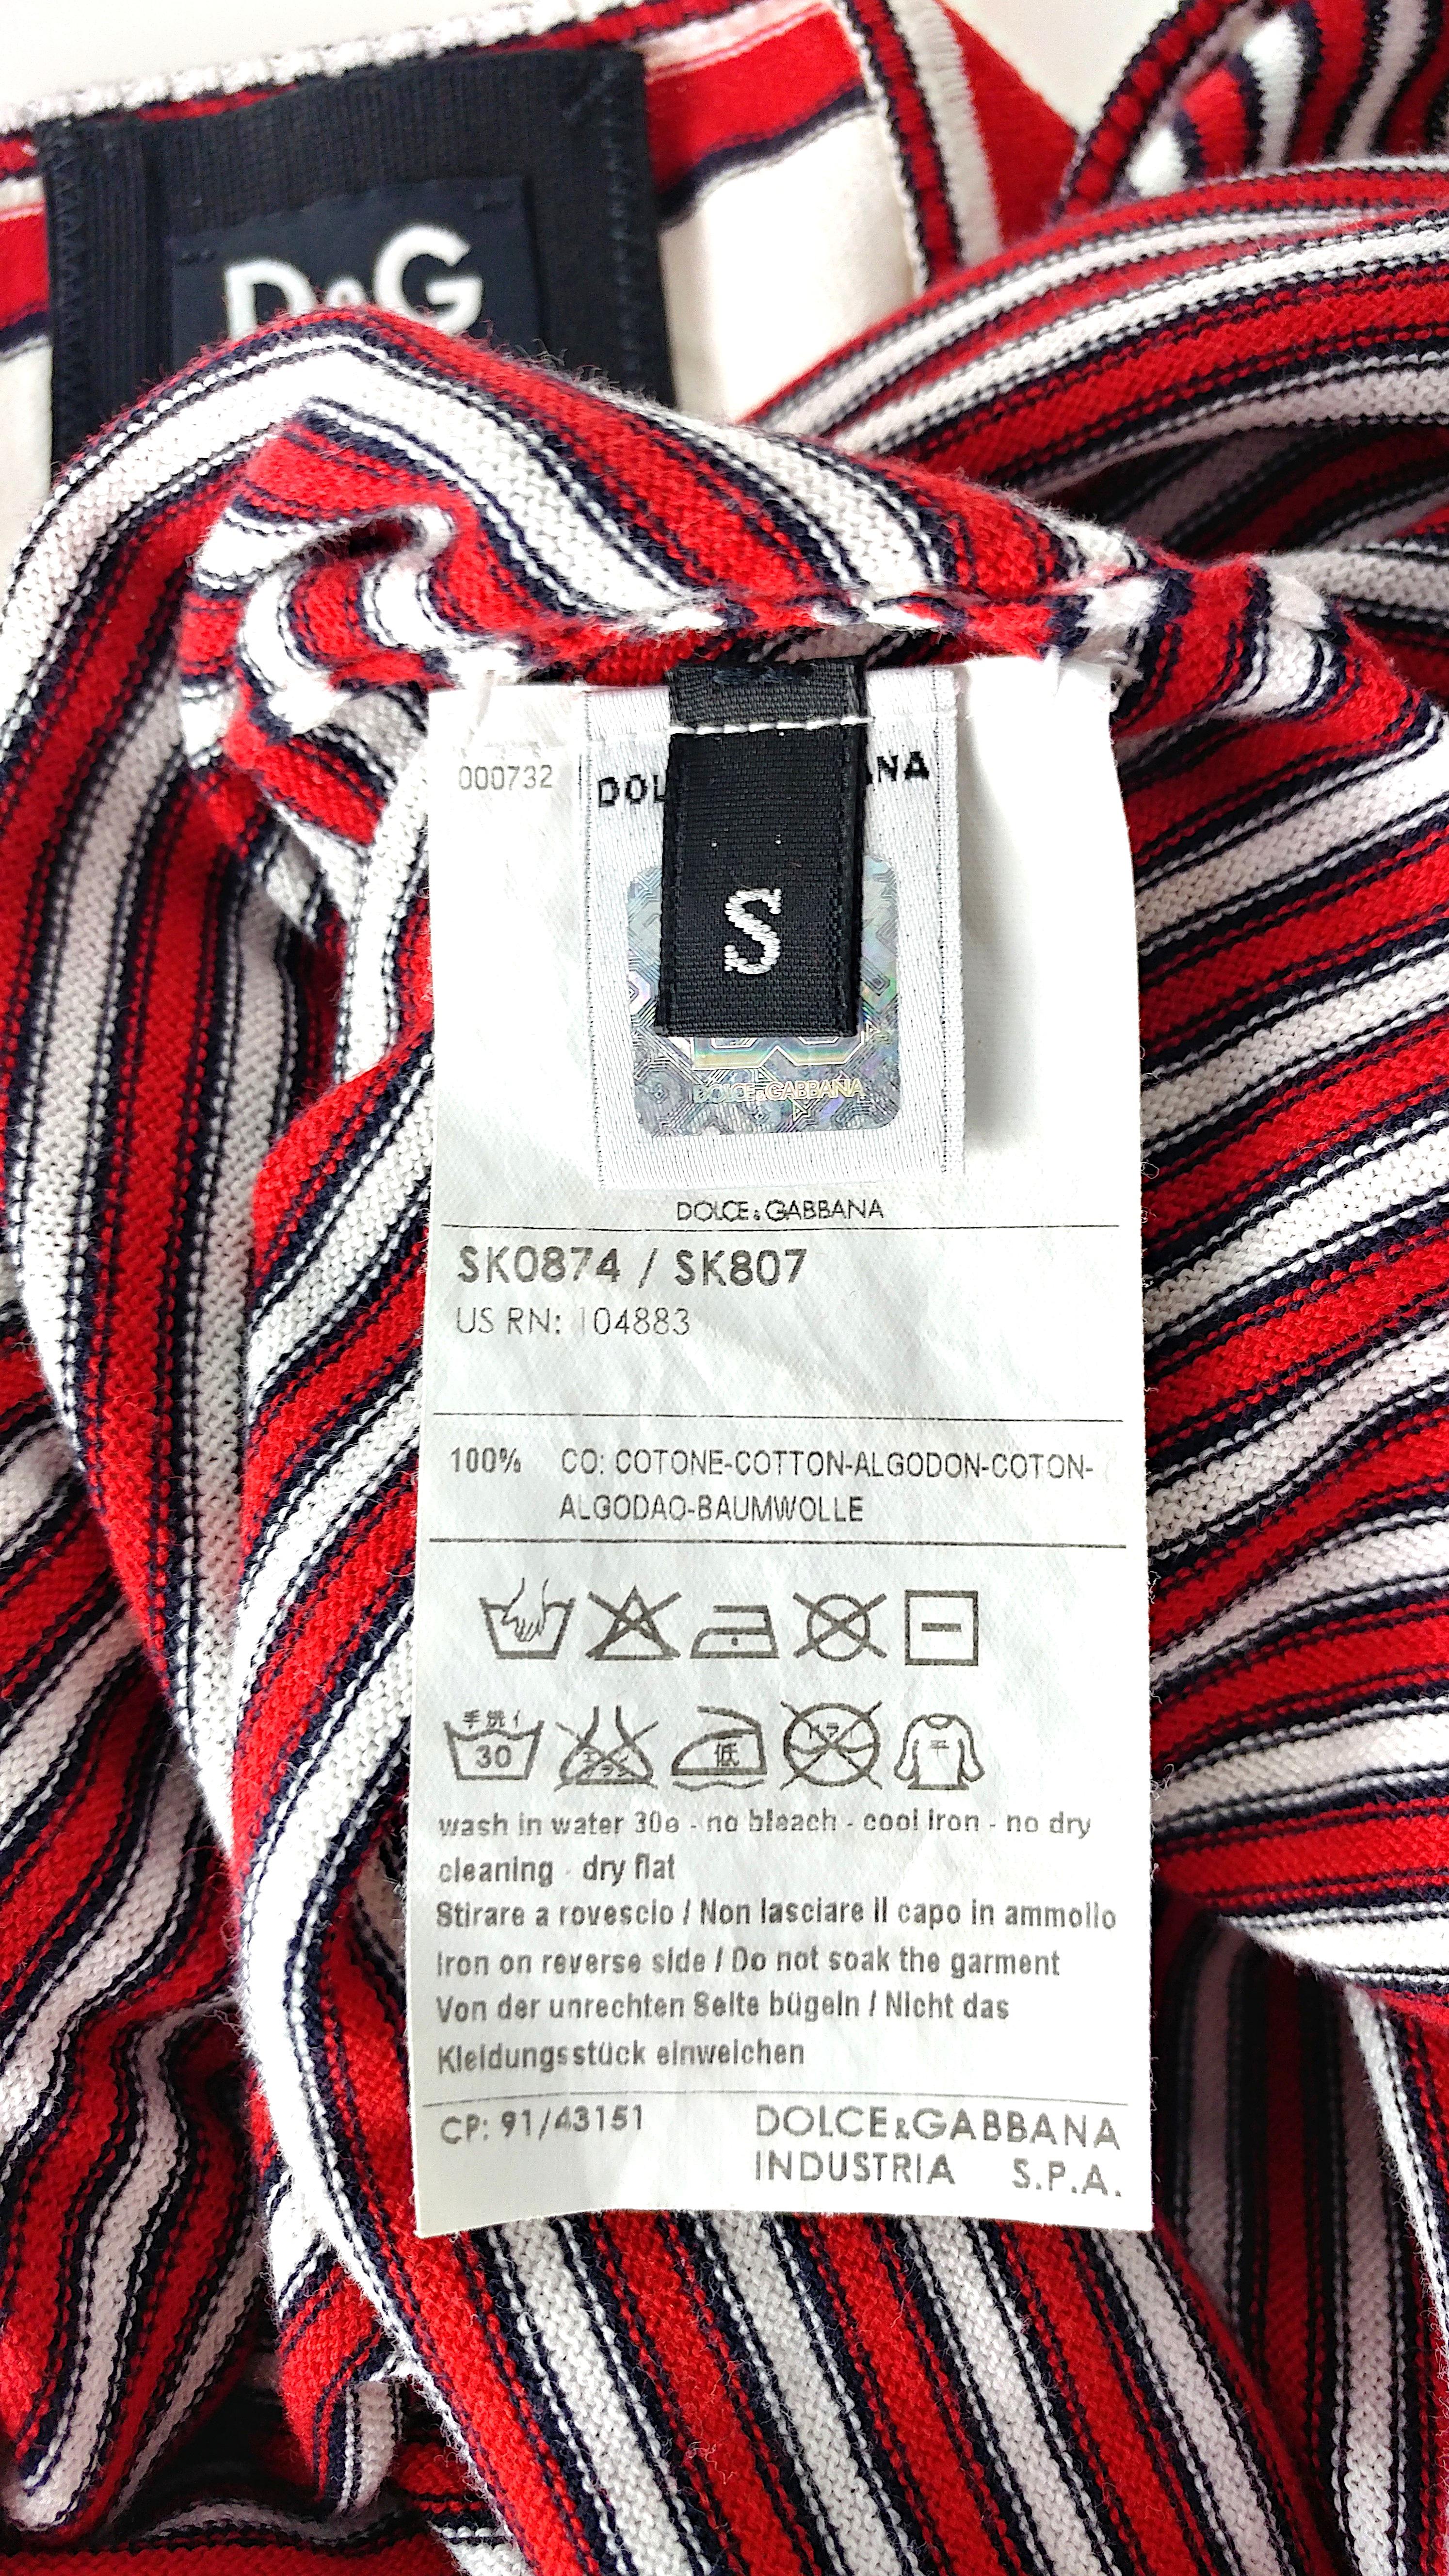 DOLCE & GABBANA – SS '09 Summer Knit Cotton Sheath Halter Dress  Size S 1